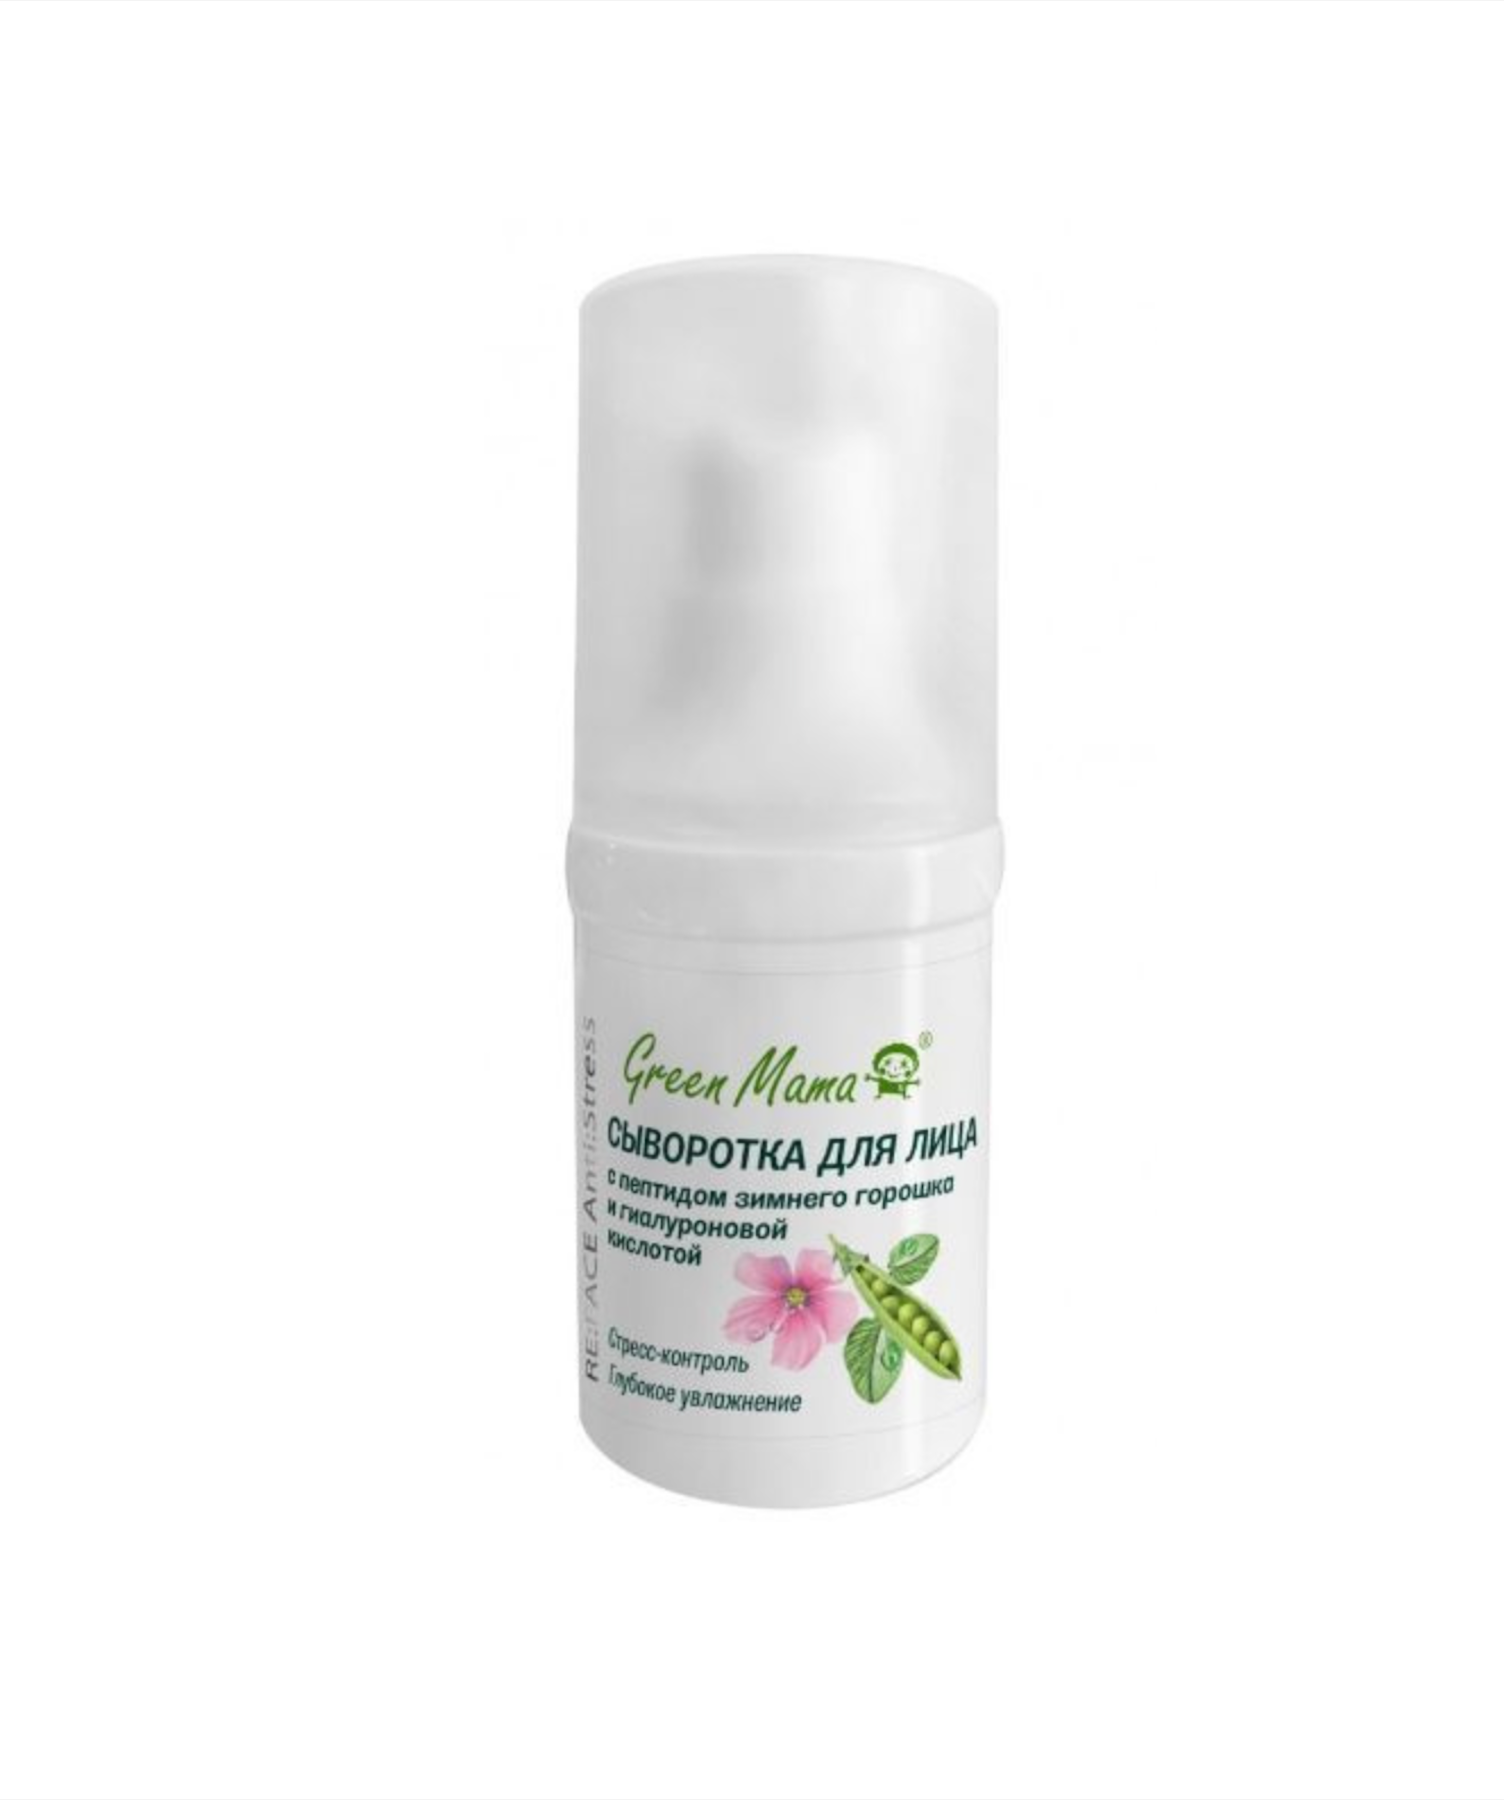 Грин Мама / Green Mama - Сыворотка для лица ReFace Antistress с петидом зимнего горошка 15 мл